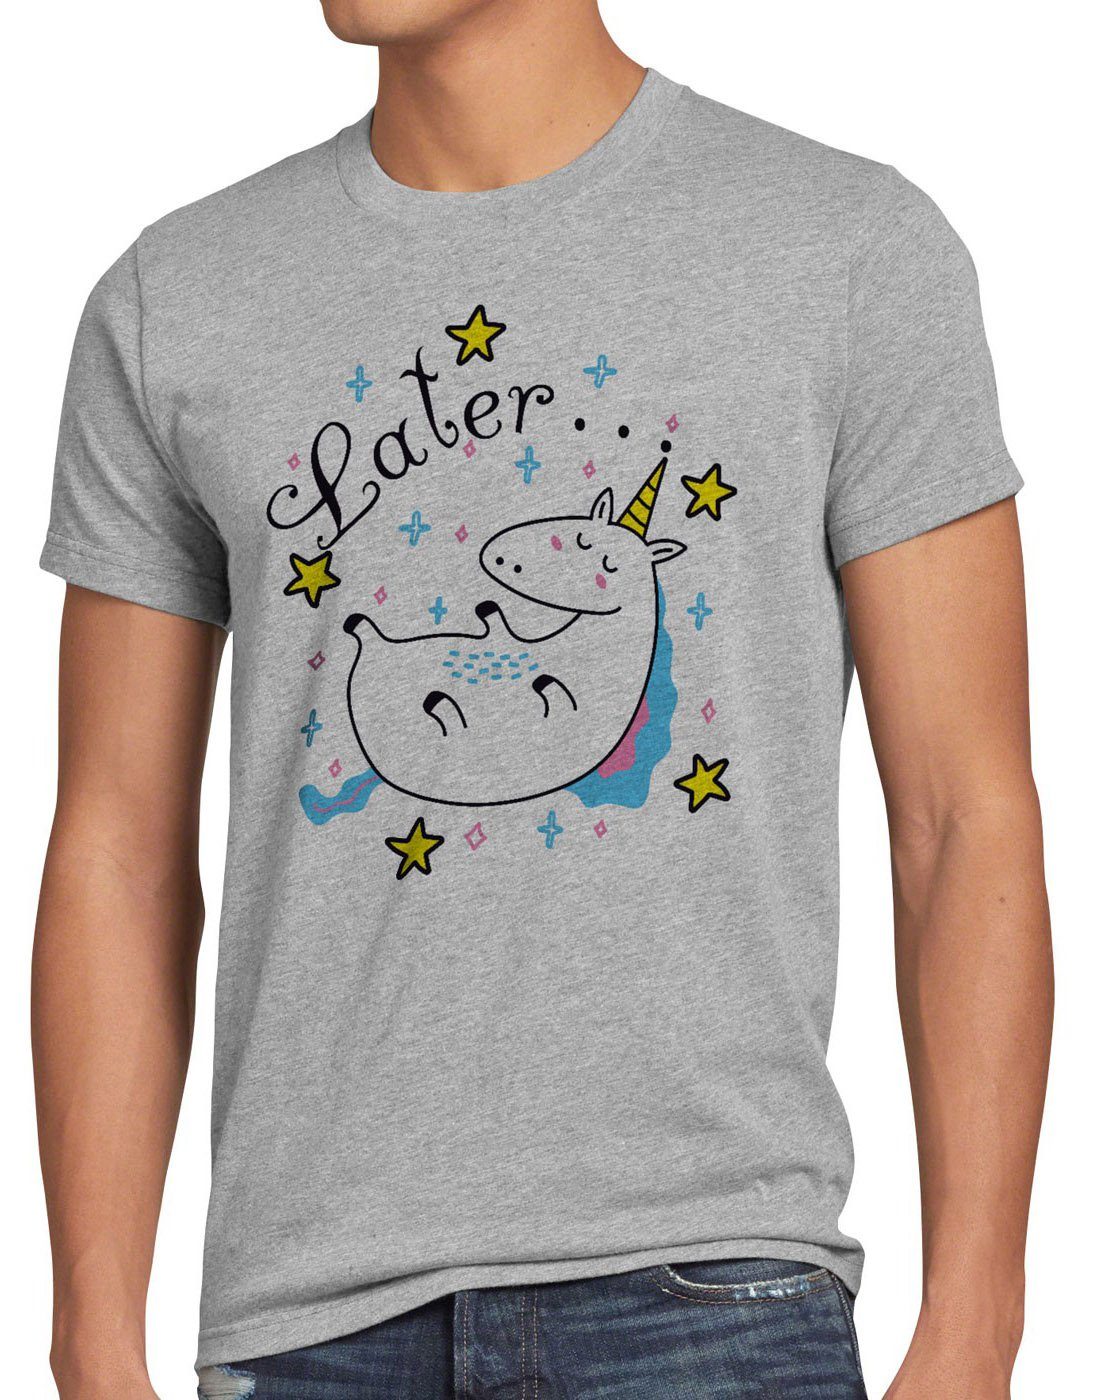 style3 Print-Shirt Herren T-Shirt Later Sleepy Unicorn Einhorn pferd fun funshirt do it später top grau meliert